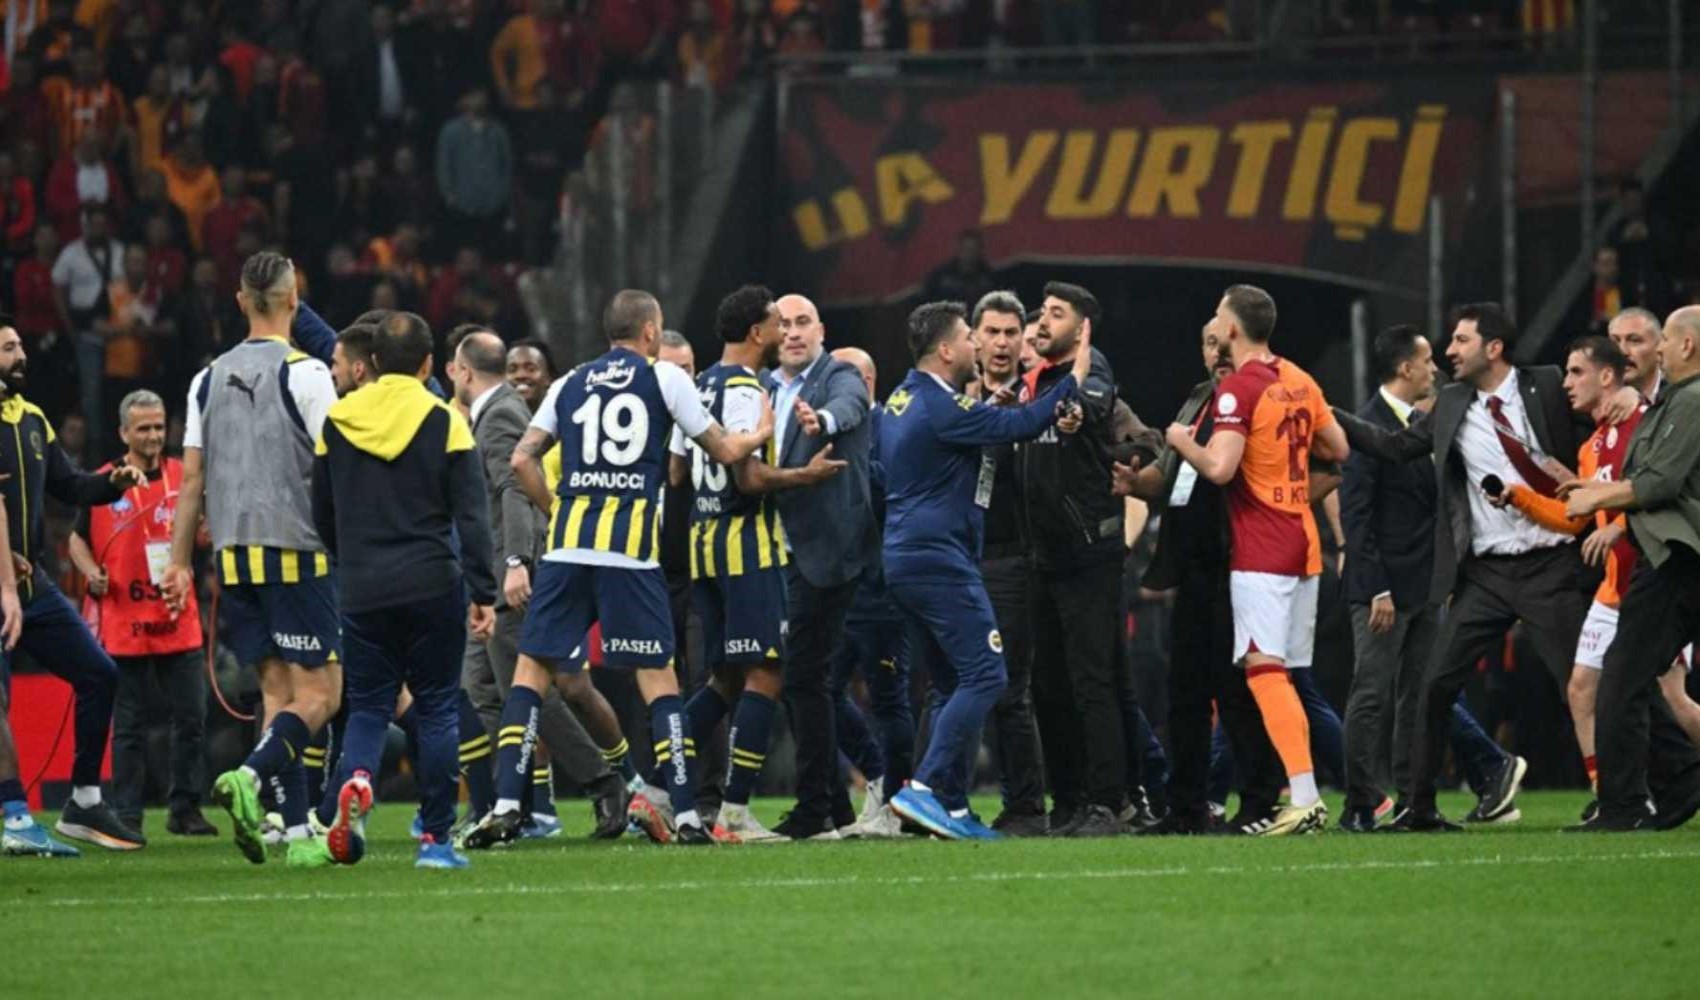 Olaylı Galatasaray-Fenerbahçe derbisiyle ilgili 3 şüphelinin ifadesi ortaya çıktı